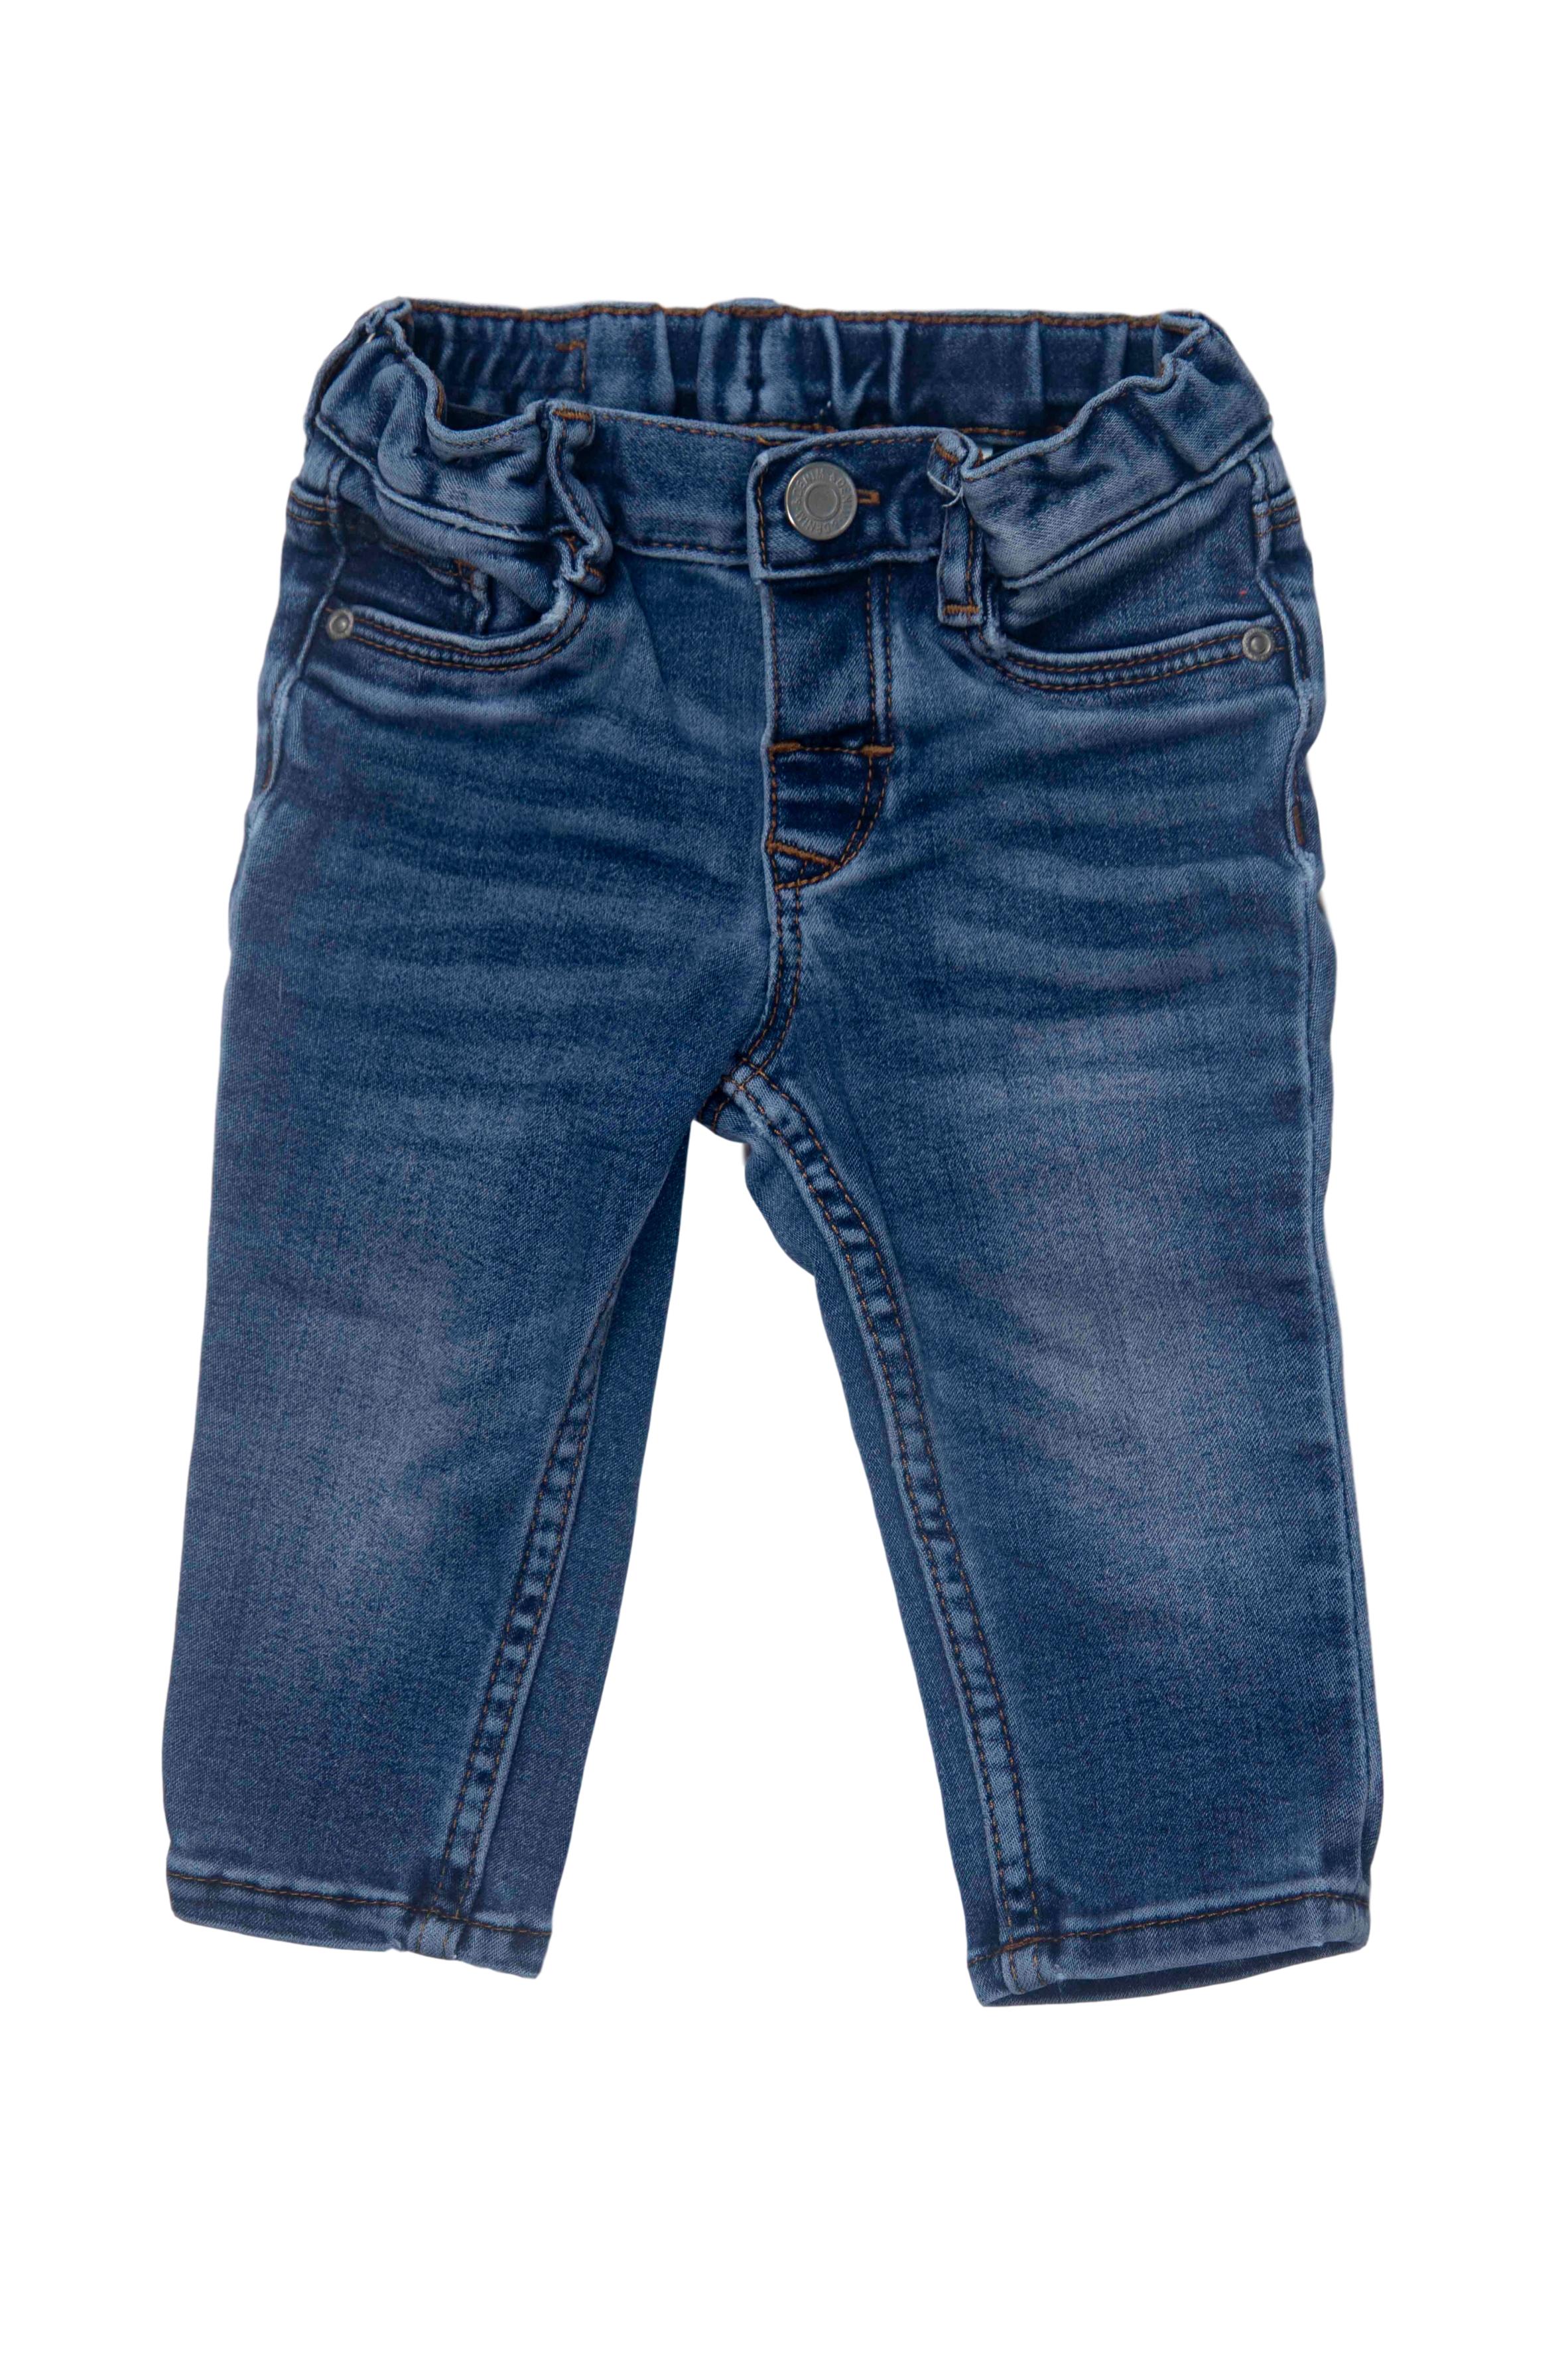 pantalón jean stretch con elastico regulable en la cintura, 80% algodon